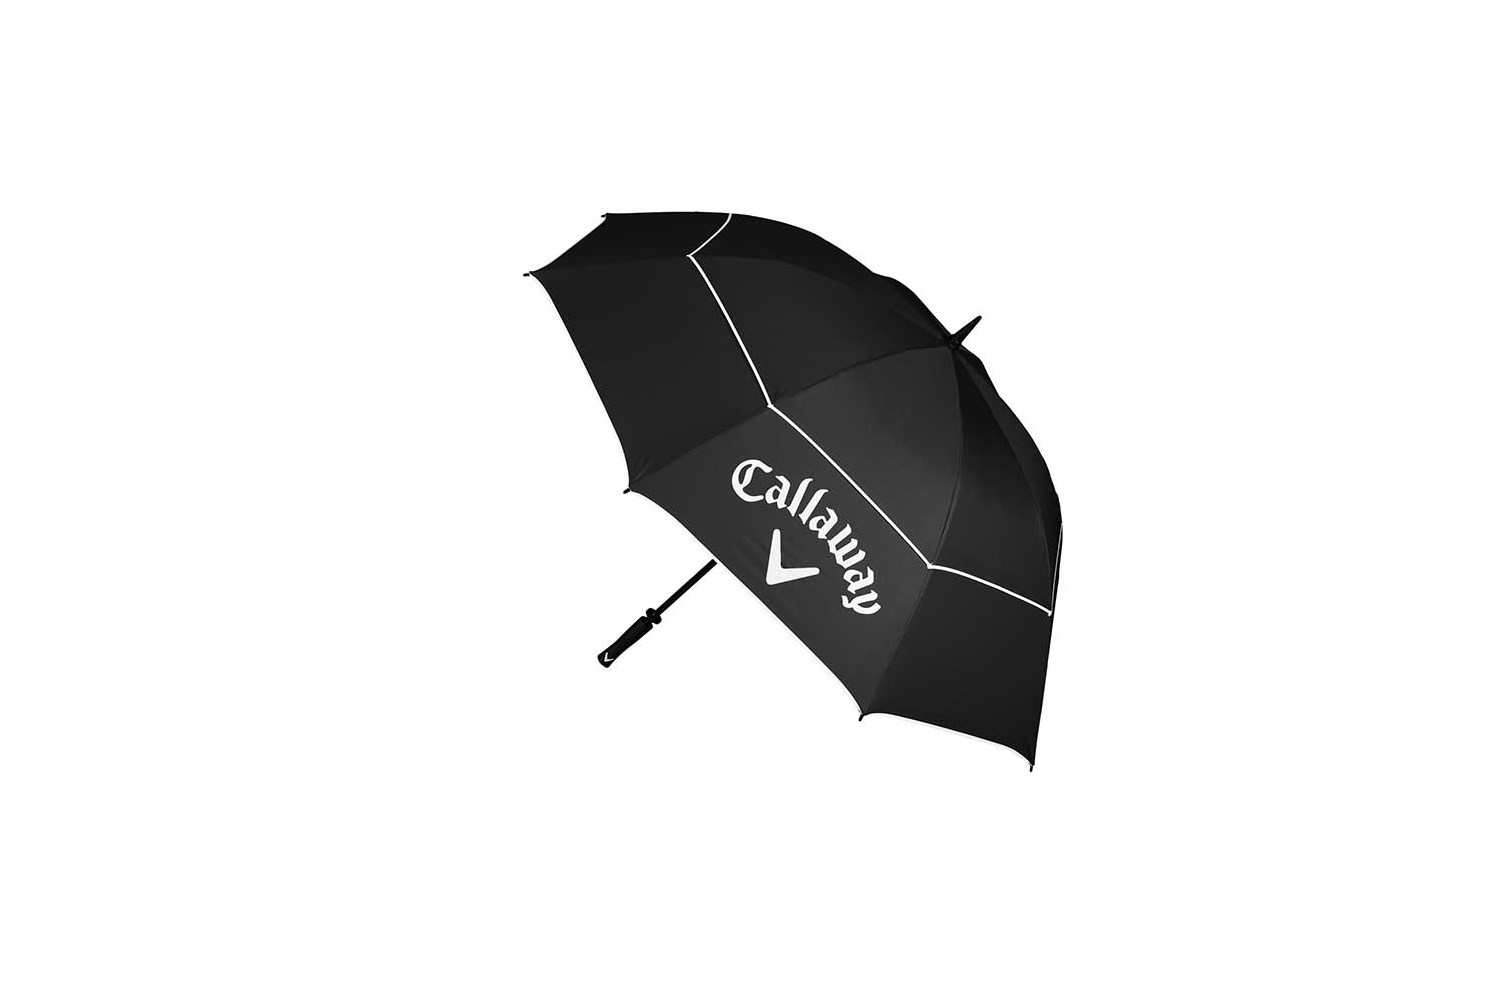 Callaway Shield 64" Umbrella Black/White